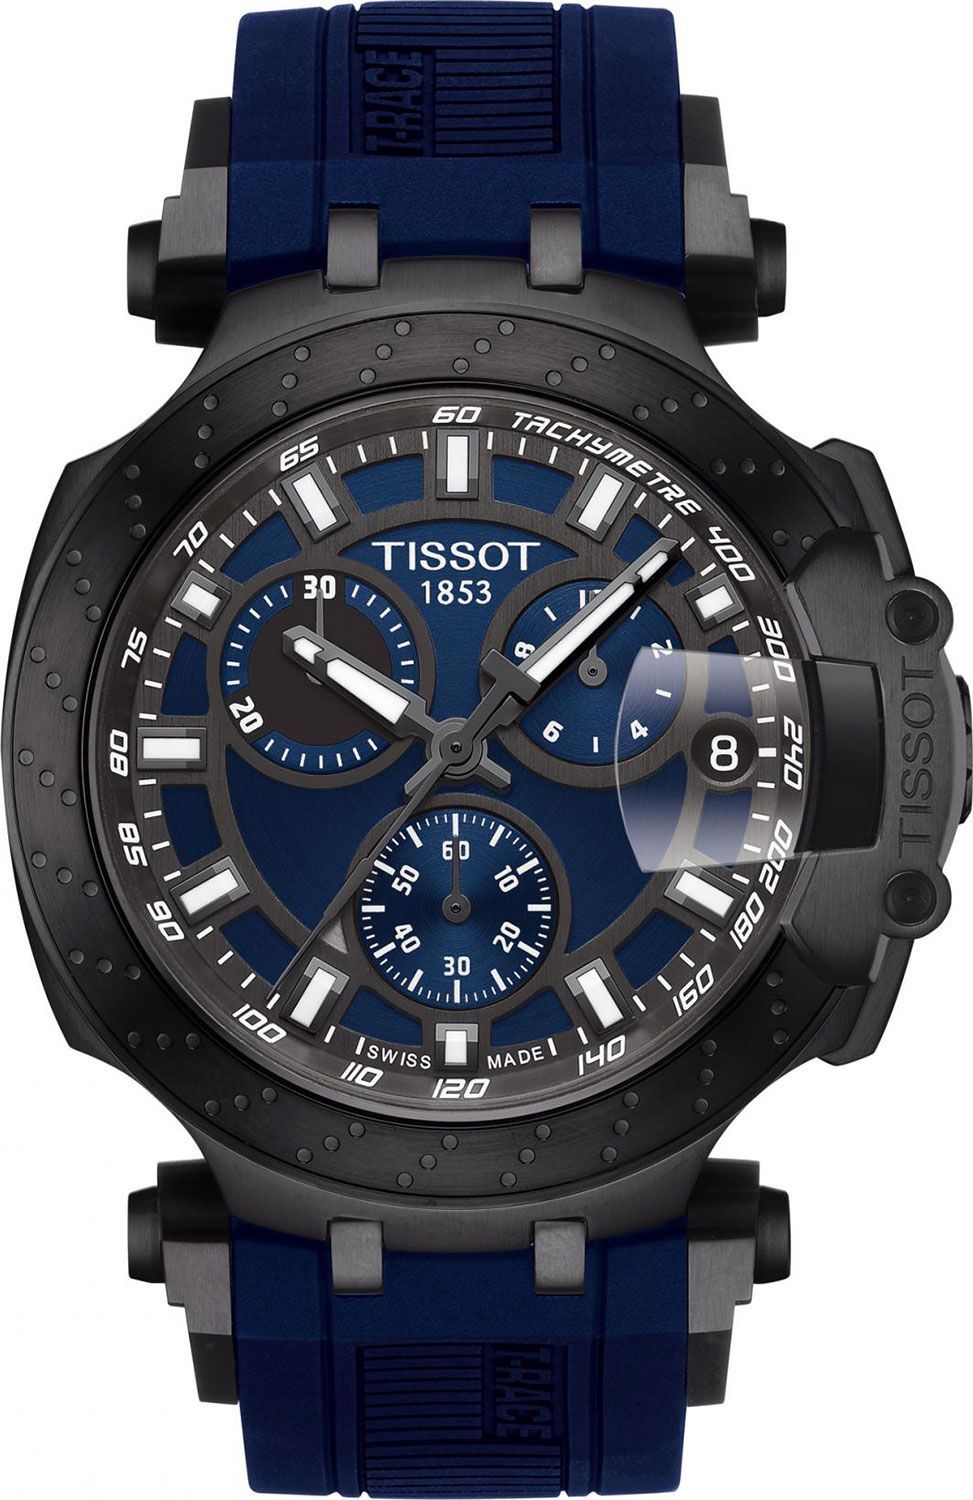 Tissot T-Sport Tissot T-Race Blue Dial 43 mm Quartz Watch For Men - 1